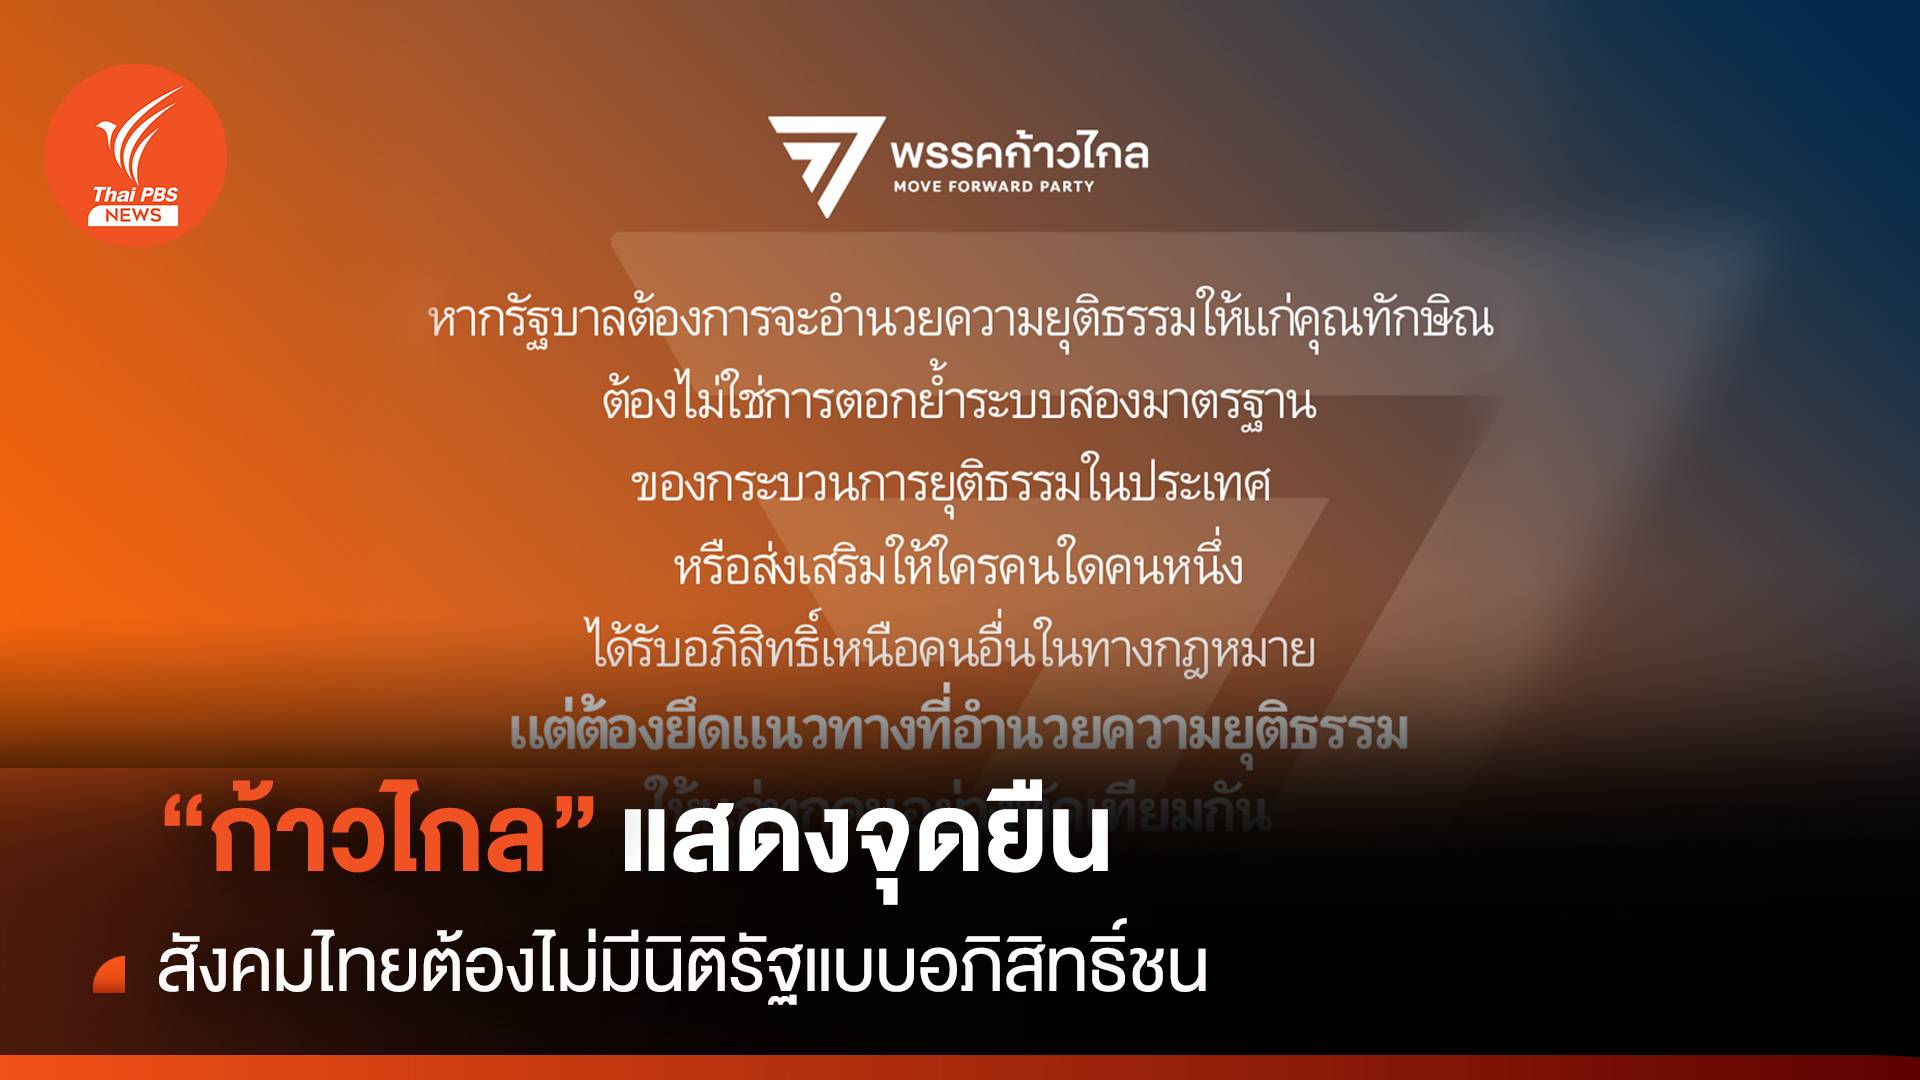 “ก้าวไกล” แสดงจุดยืน สังคมไทยต้องไม่มีนิติรัฐแบบอภิสิทธิ์ชน